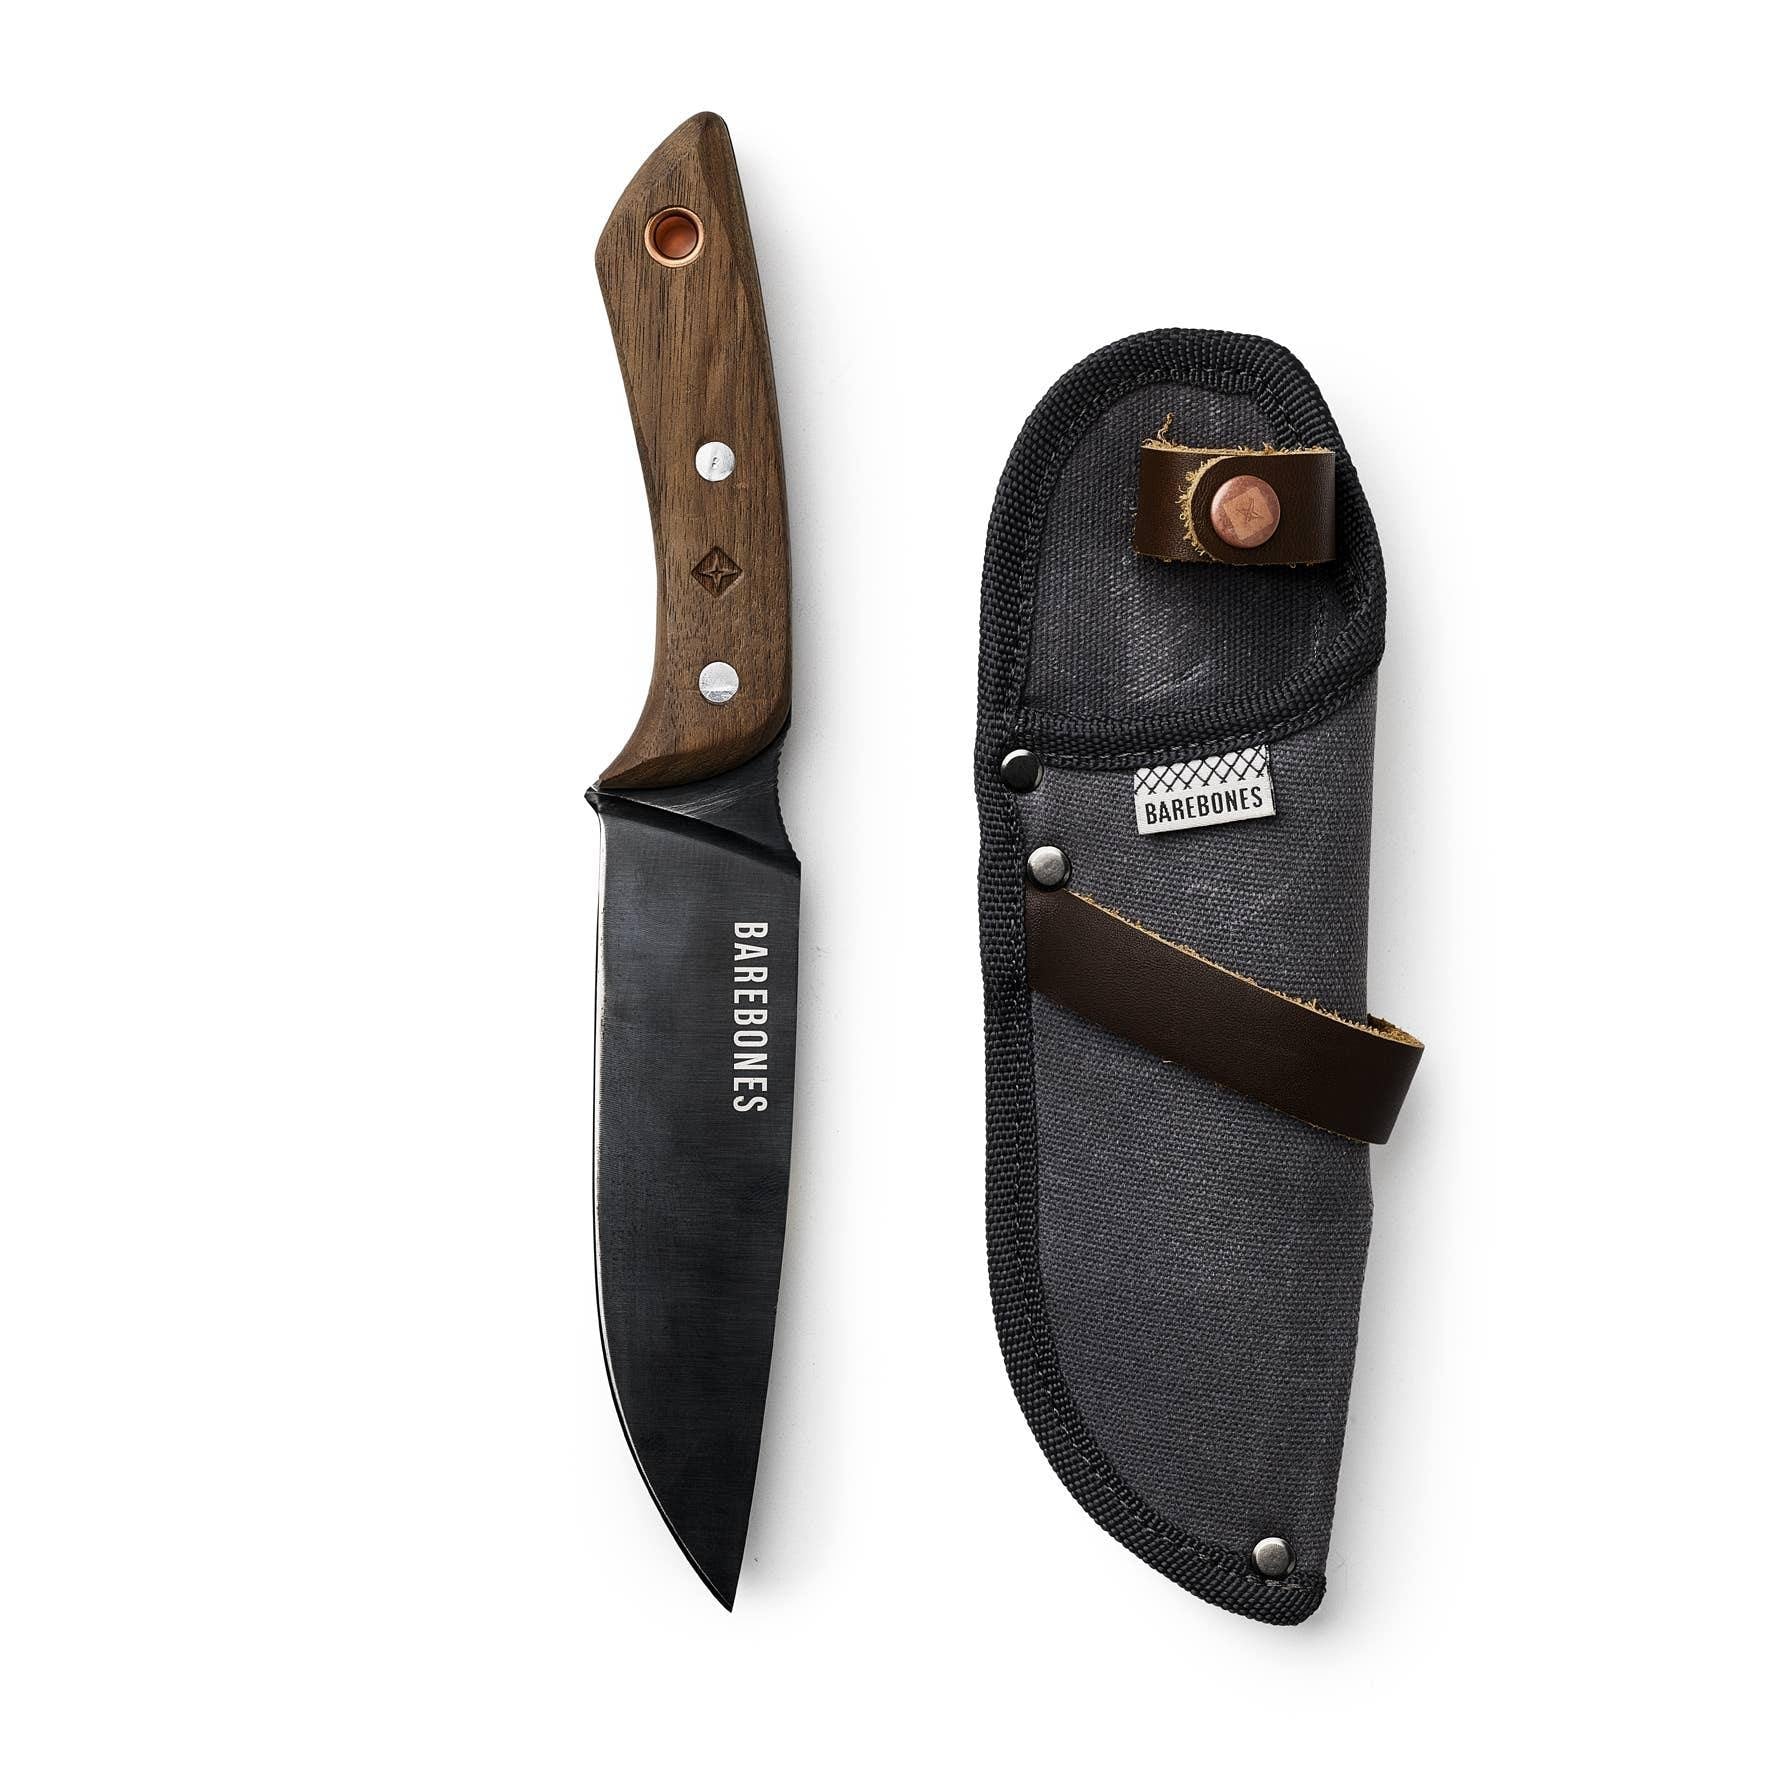 Barebones | No 6 Field Knife, Knives, Barebones, Defiance Outdoor Gear Co.